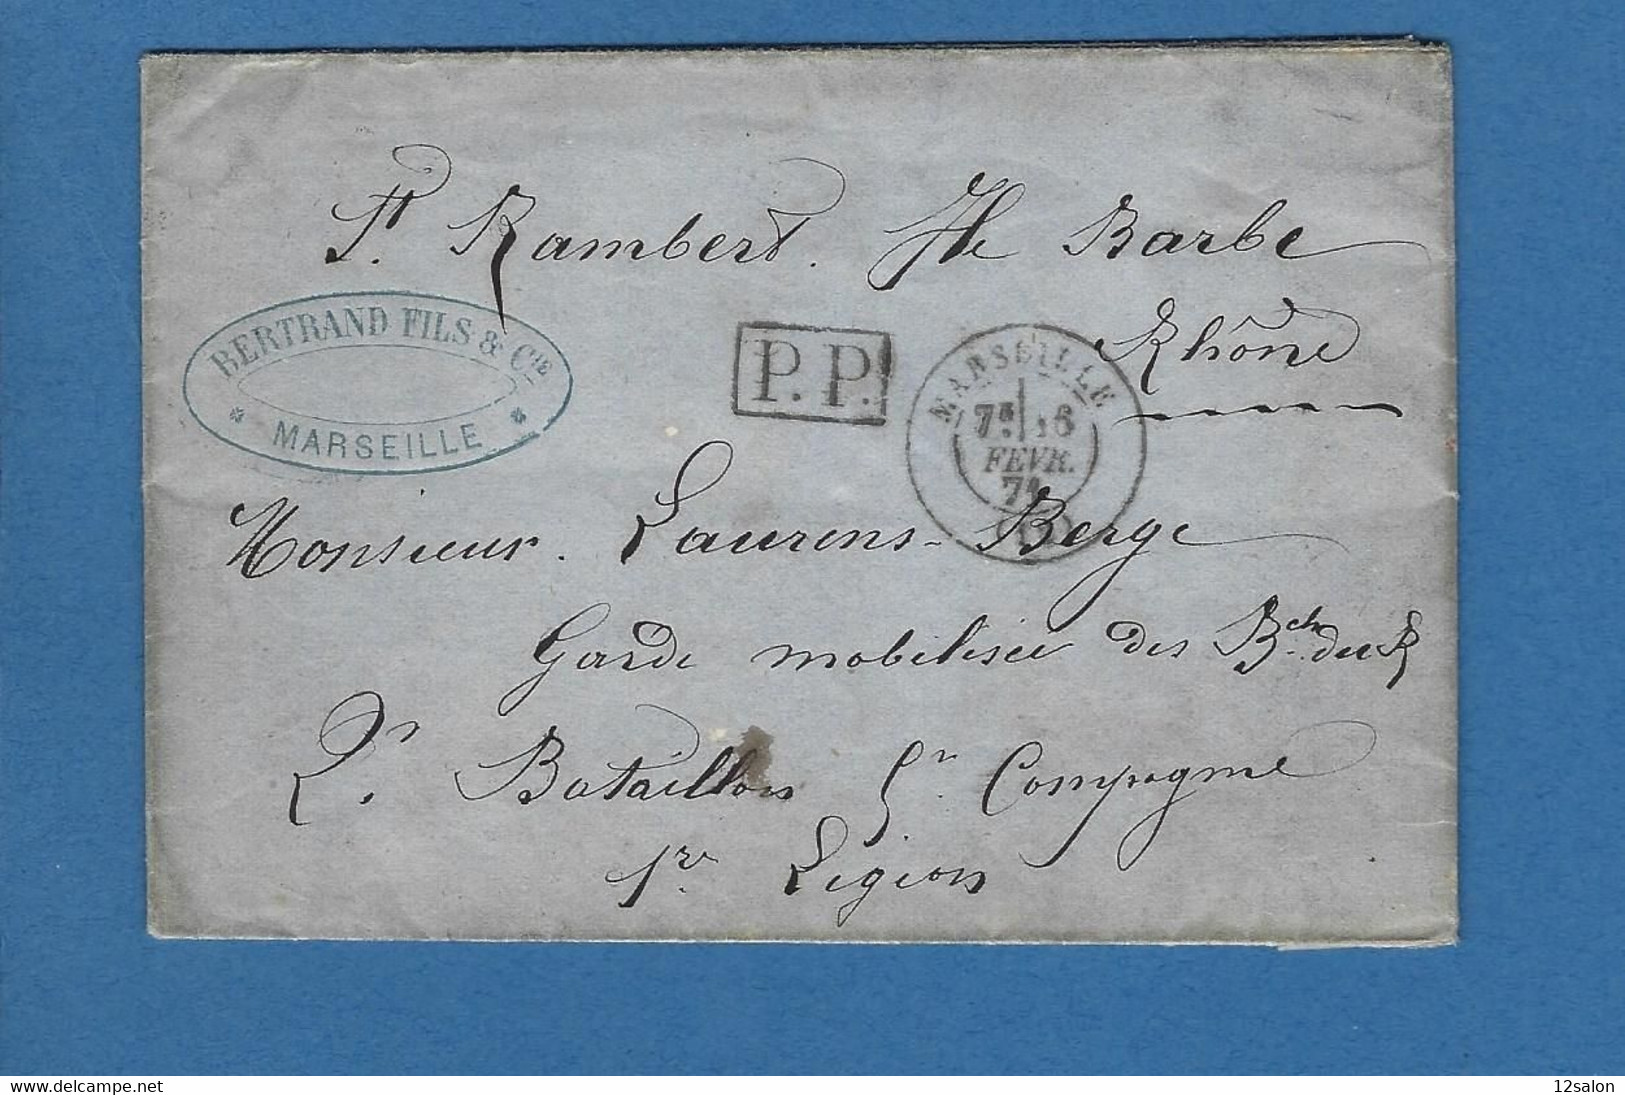 BOUCHES DU RHONE MARSEILLE POUR GARDE MOBILE A LYON ILE BARBE EN FRANCHISE GUERRE 1870 - Krieg 1870